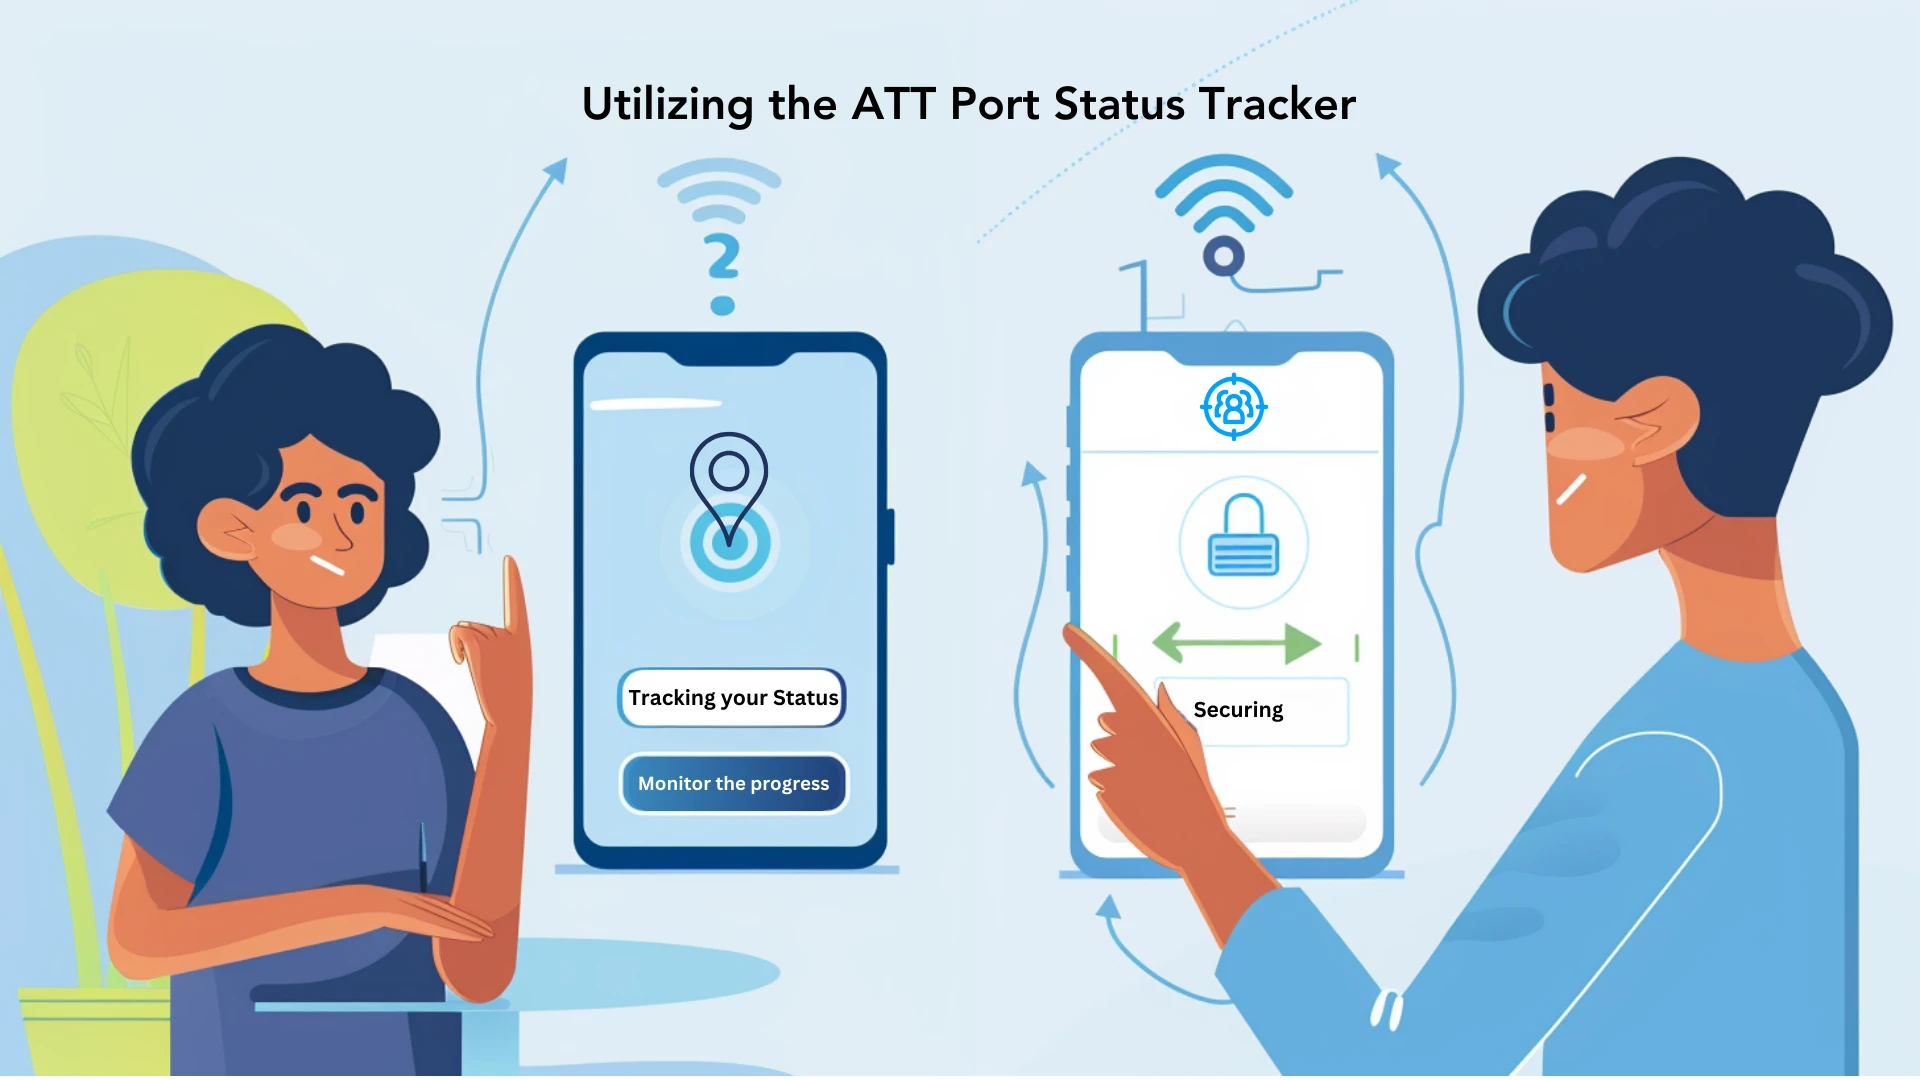 Utilizing the ATT Port Status Tracker
